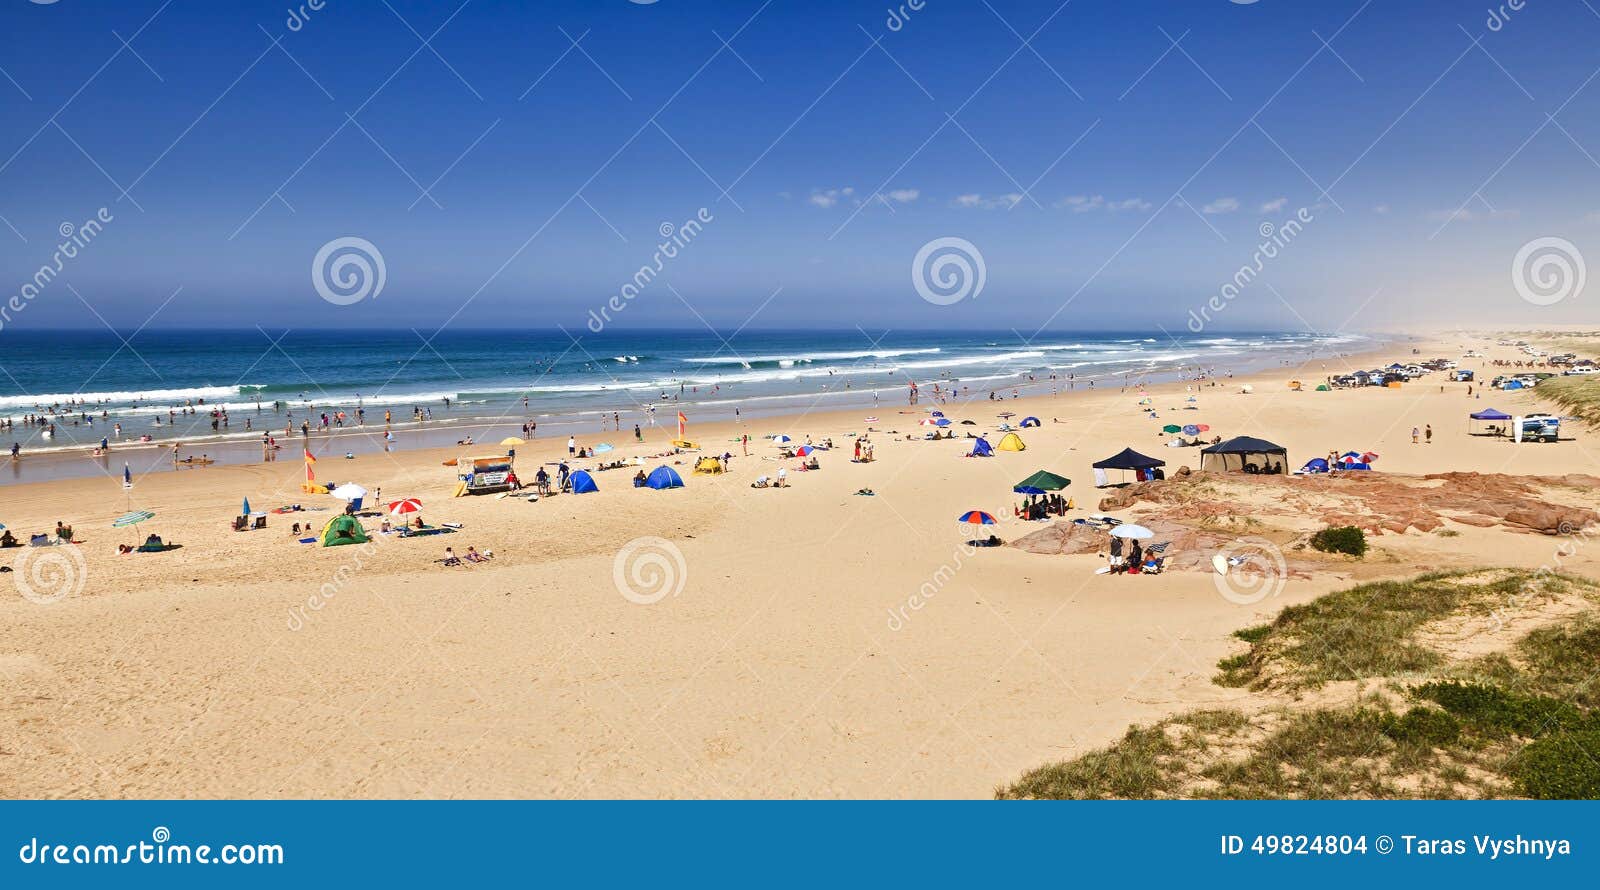 sea stockton beach crowd panorama